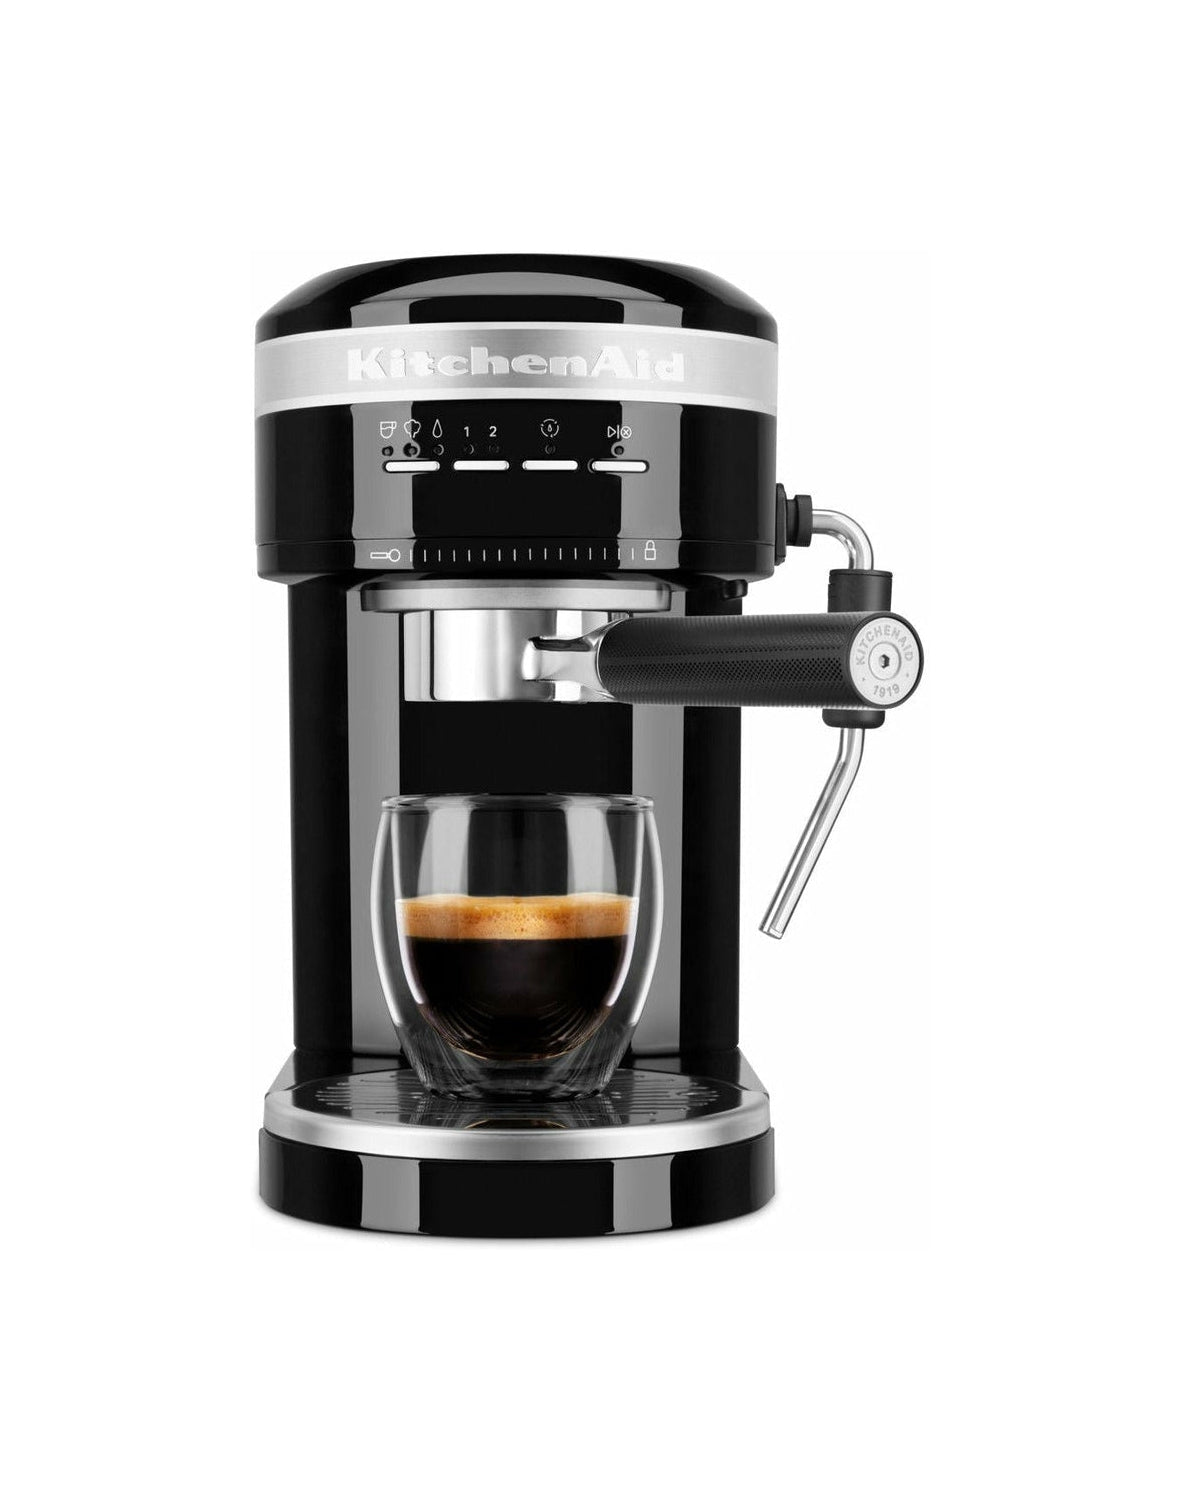 Keukenhulp 5 KES6503 Artisan semi -automatische espressomachine, onyx zwart